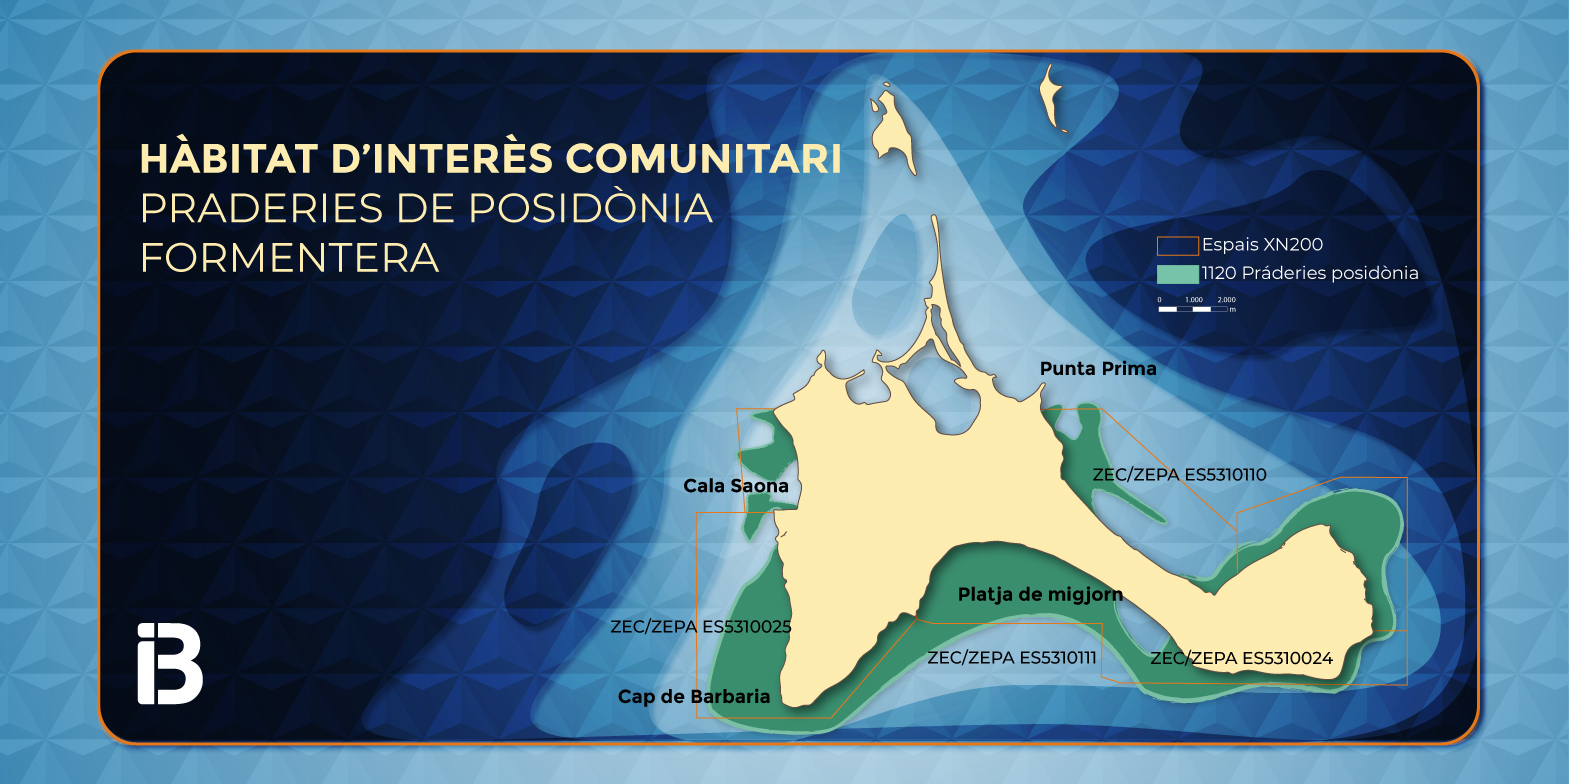 Protegit tot el litoral i la zona marítima de Formentera: aprovat el Pla de Gestió Natura 2000